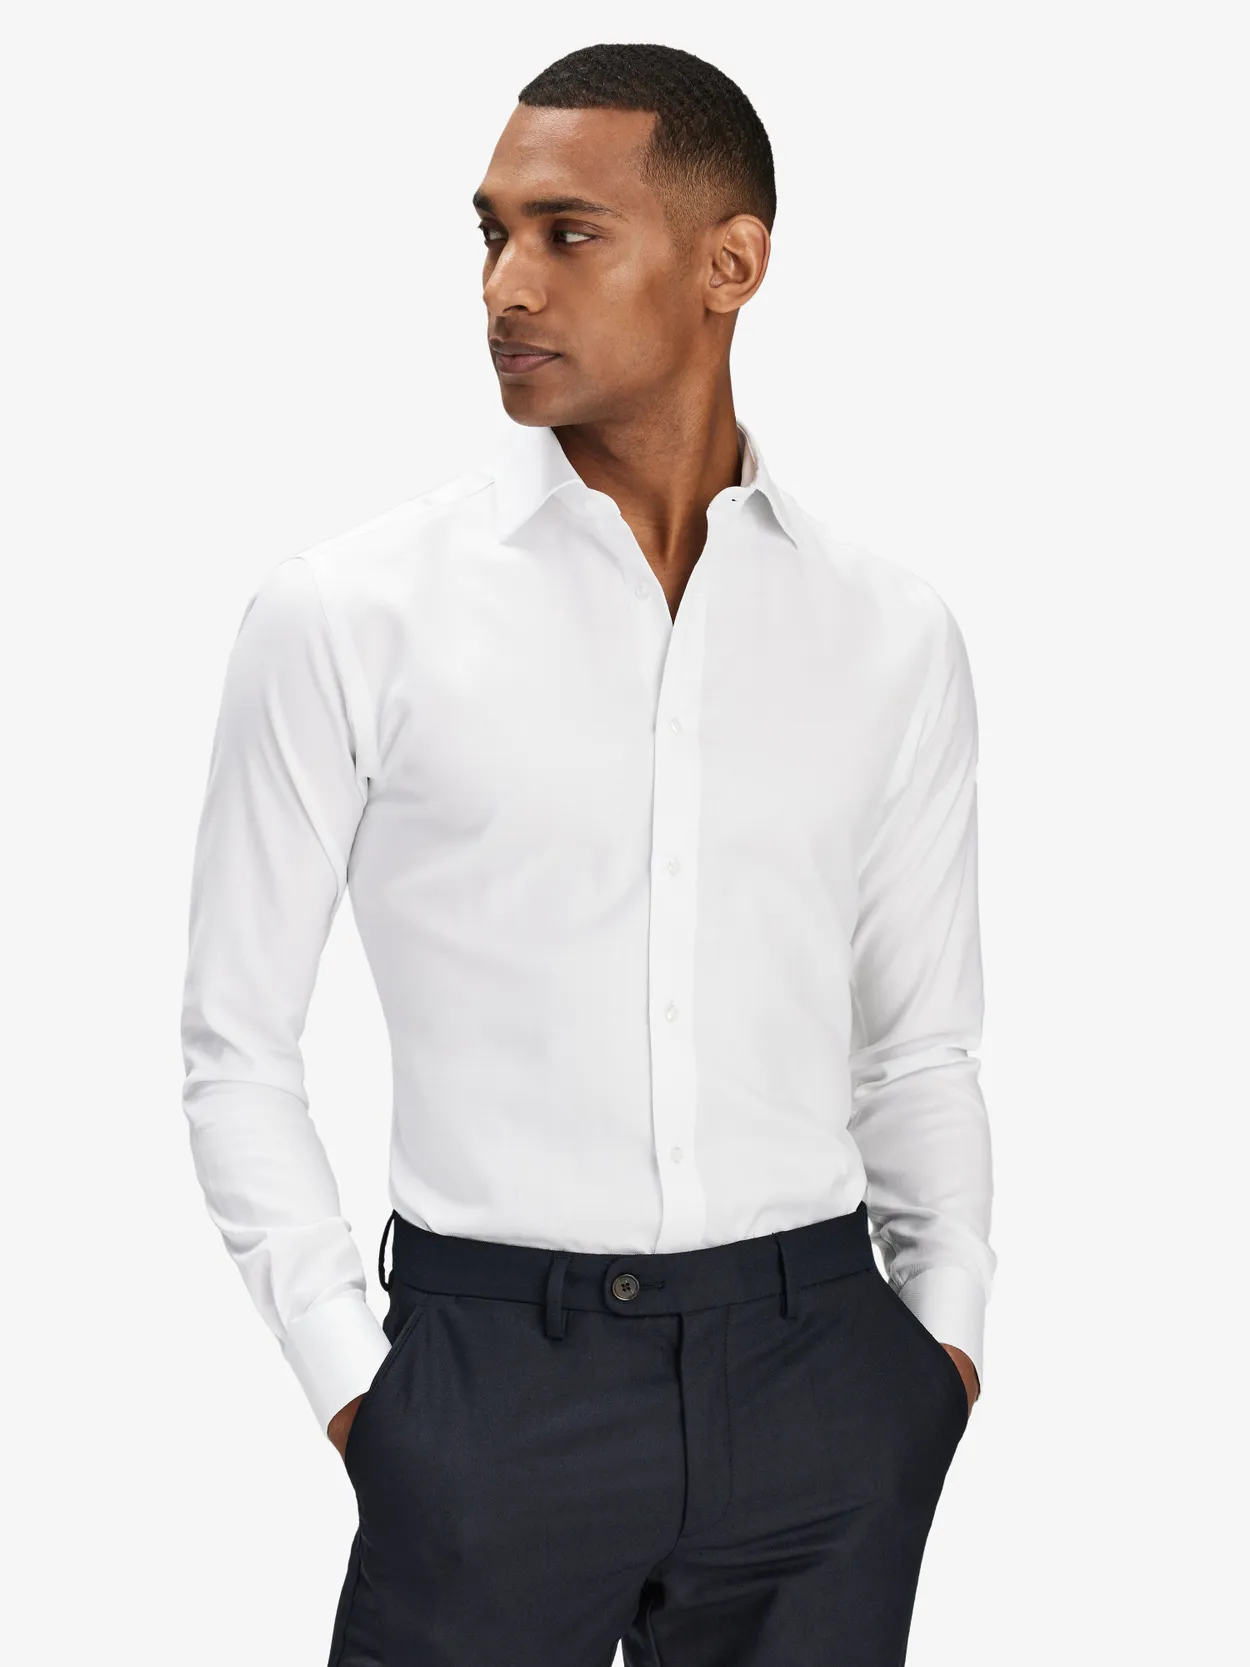 Hvid Skjorte Sildebensmønstret